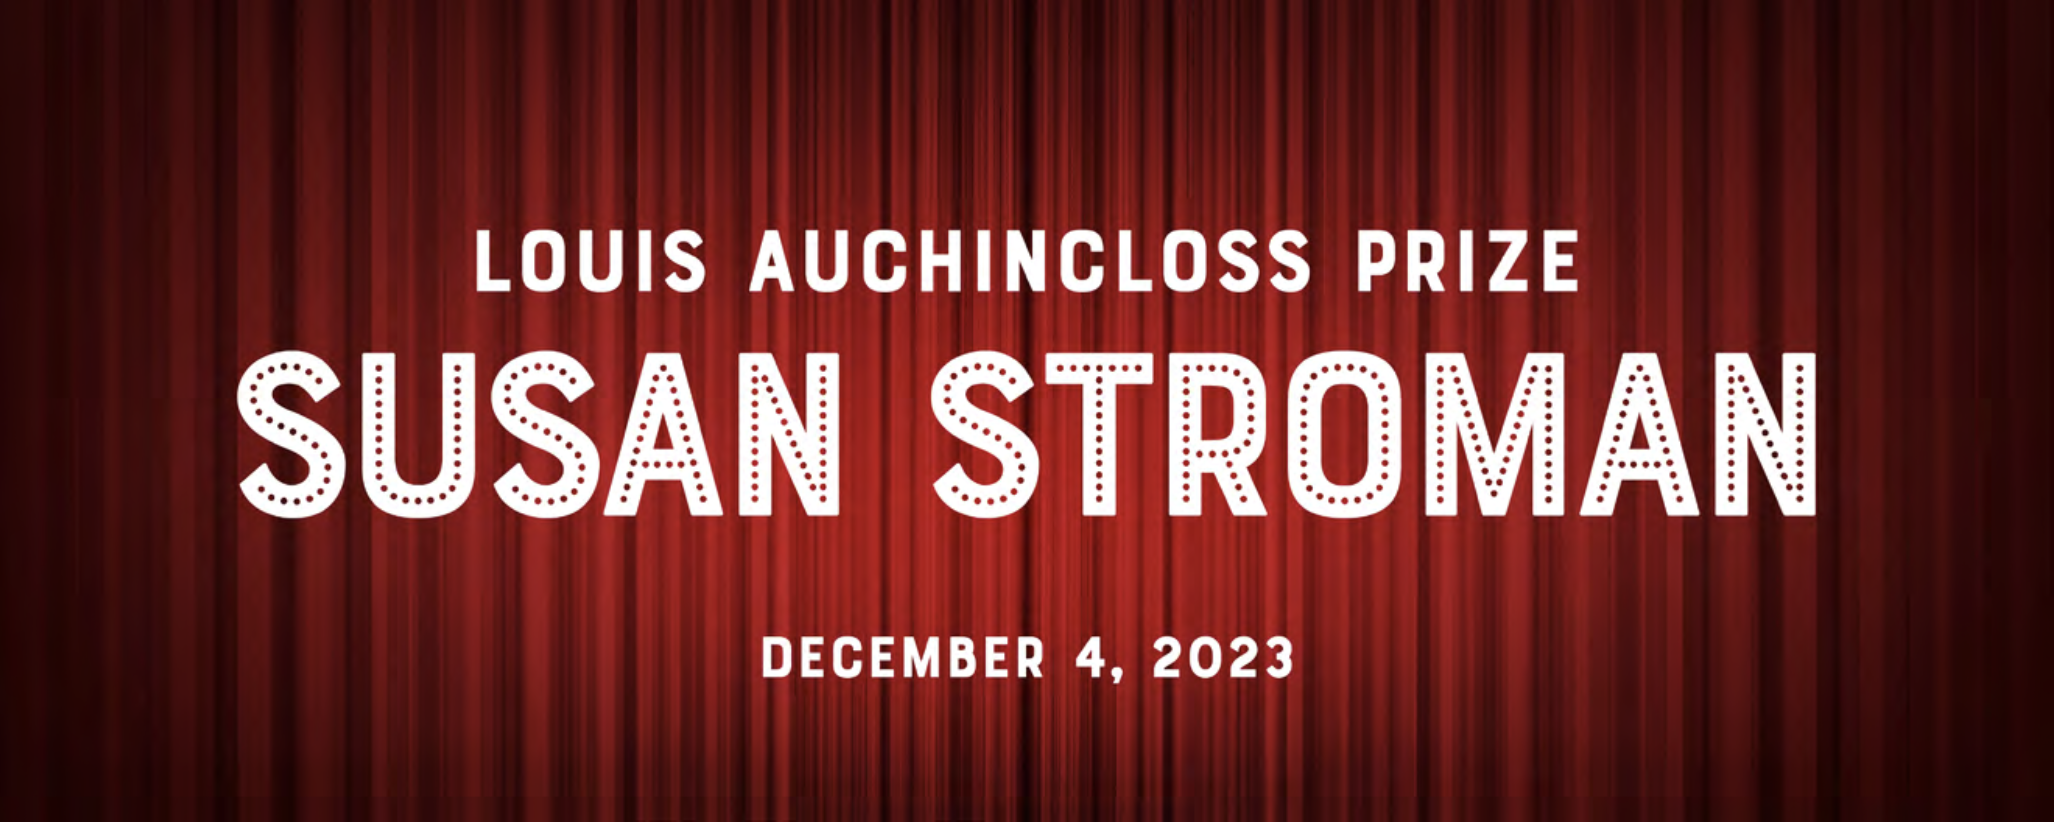 Prêmio Louis Auchincloss em homenagem a Susan Stroman